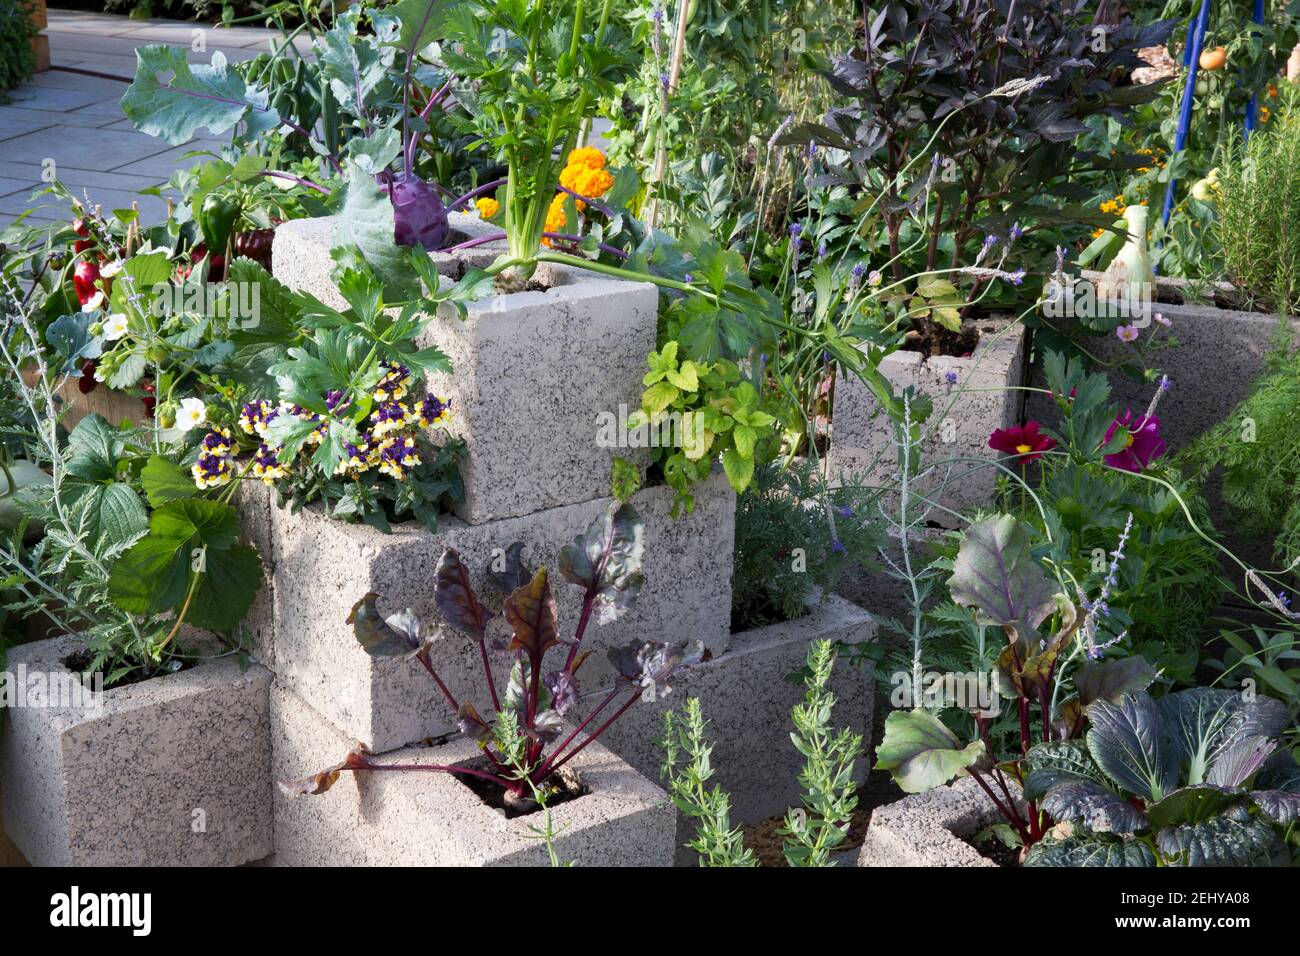 Kleiner städtischer Raum Garten vertikale Gartenarbeit ökologisch anbauendes Gemüse und Kräuter Pflanzen, die in ungewöhnlichen Behältern angebaut werden, Upcycling umfunktioniert Großbritannien Stockfoto